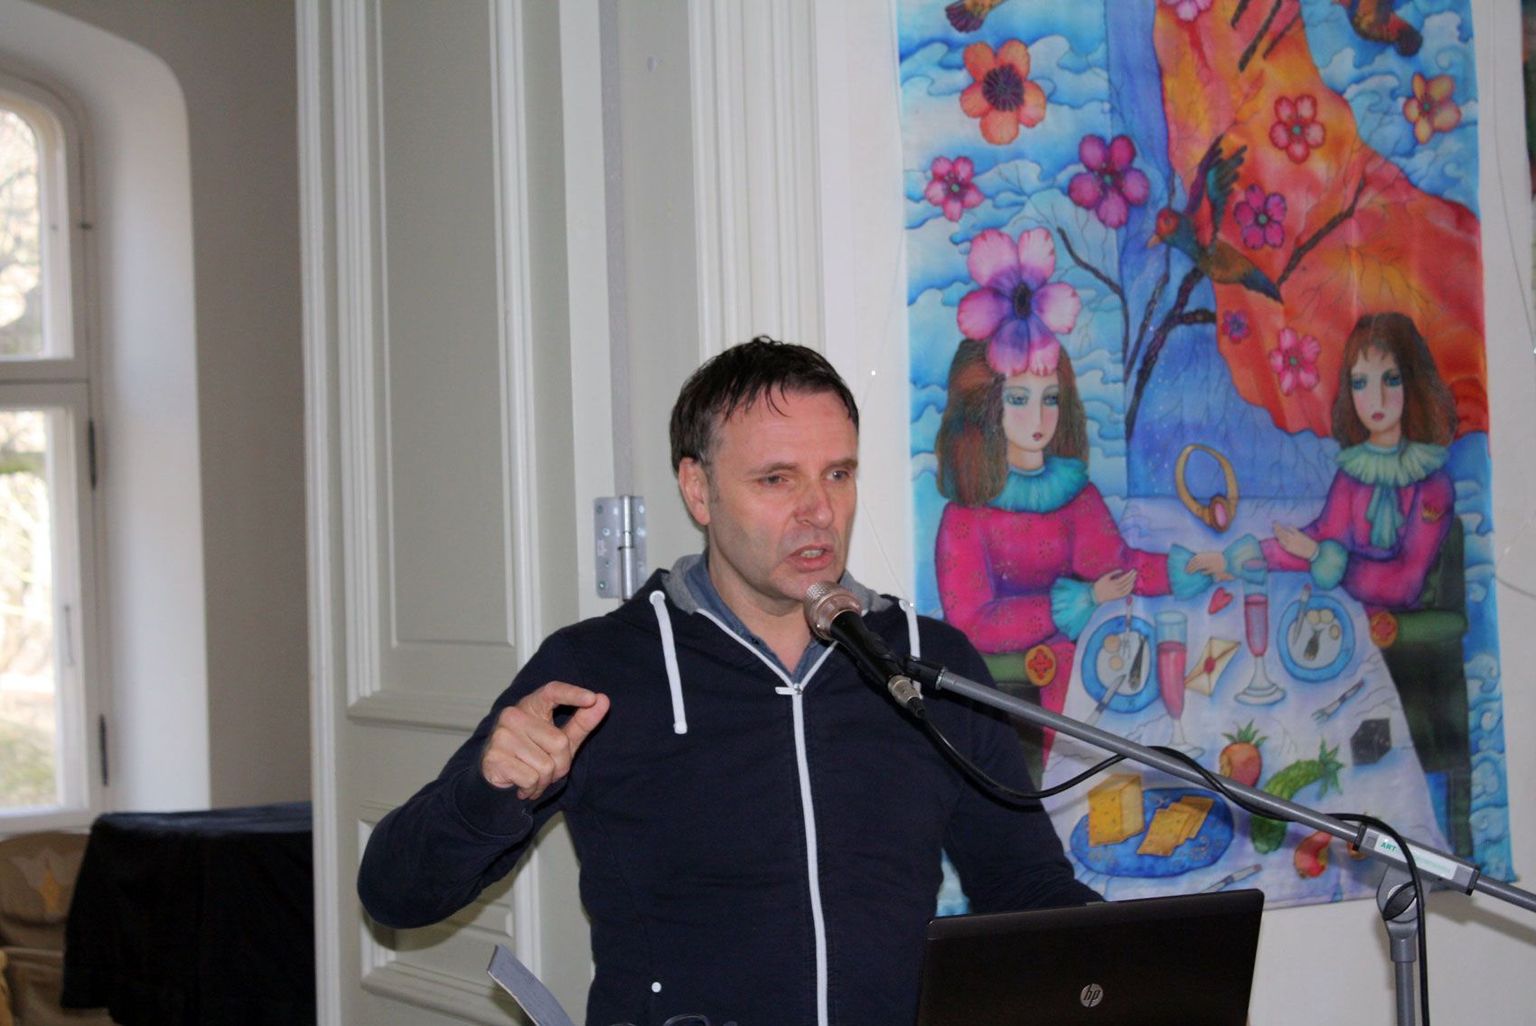 Edward van de Vendel aasta tagasi Eestis lastekirjanduse seminaril esinemas, nüüd on teda oodata festivalile HeadRead.